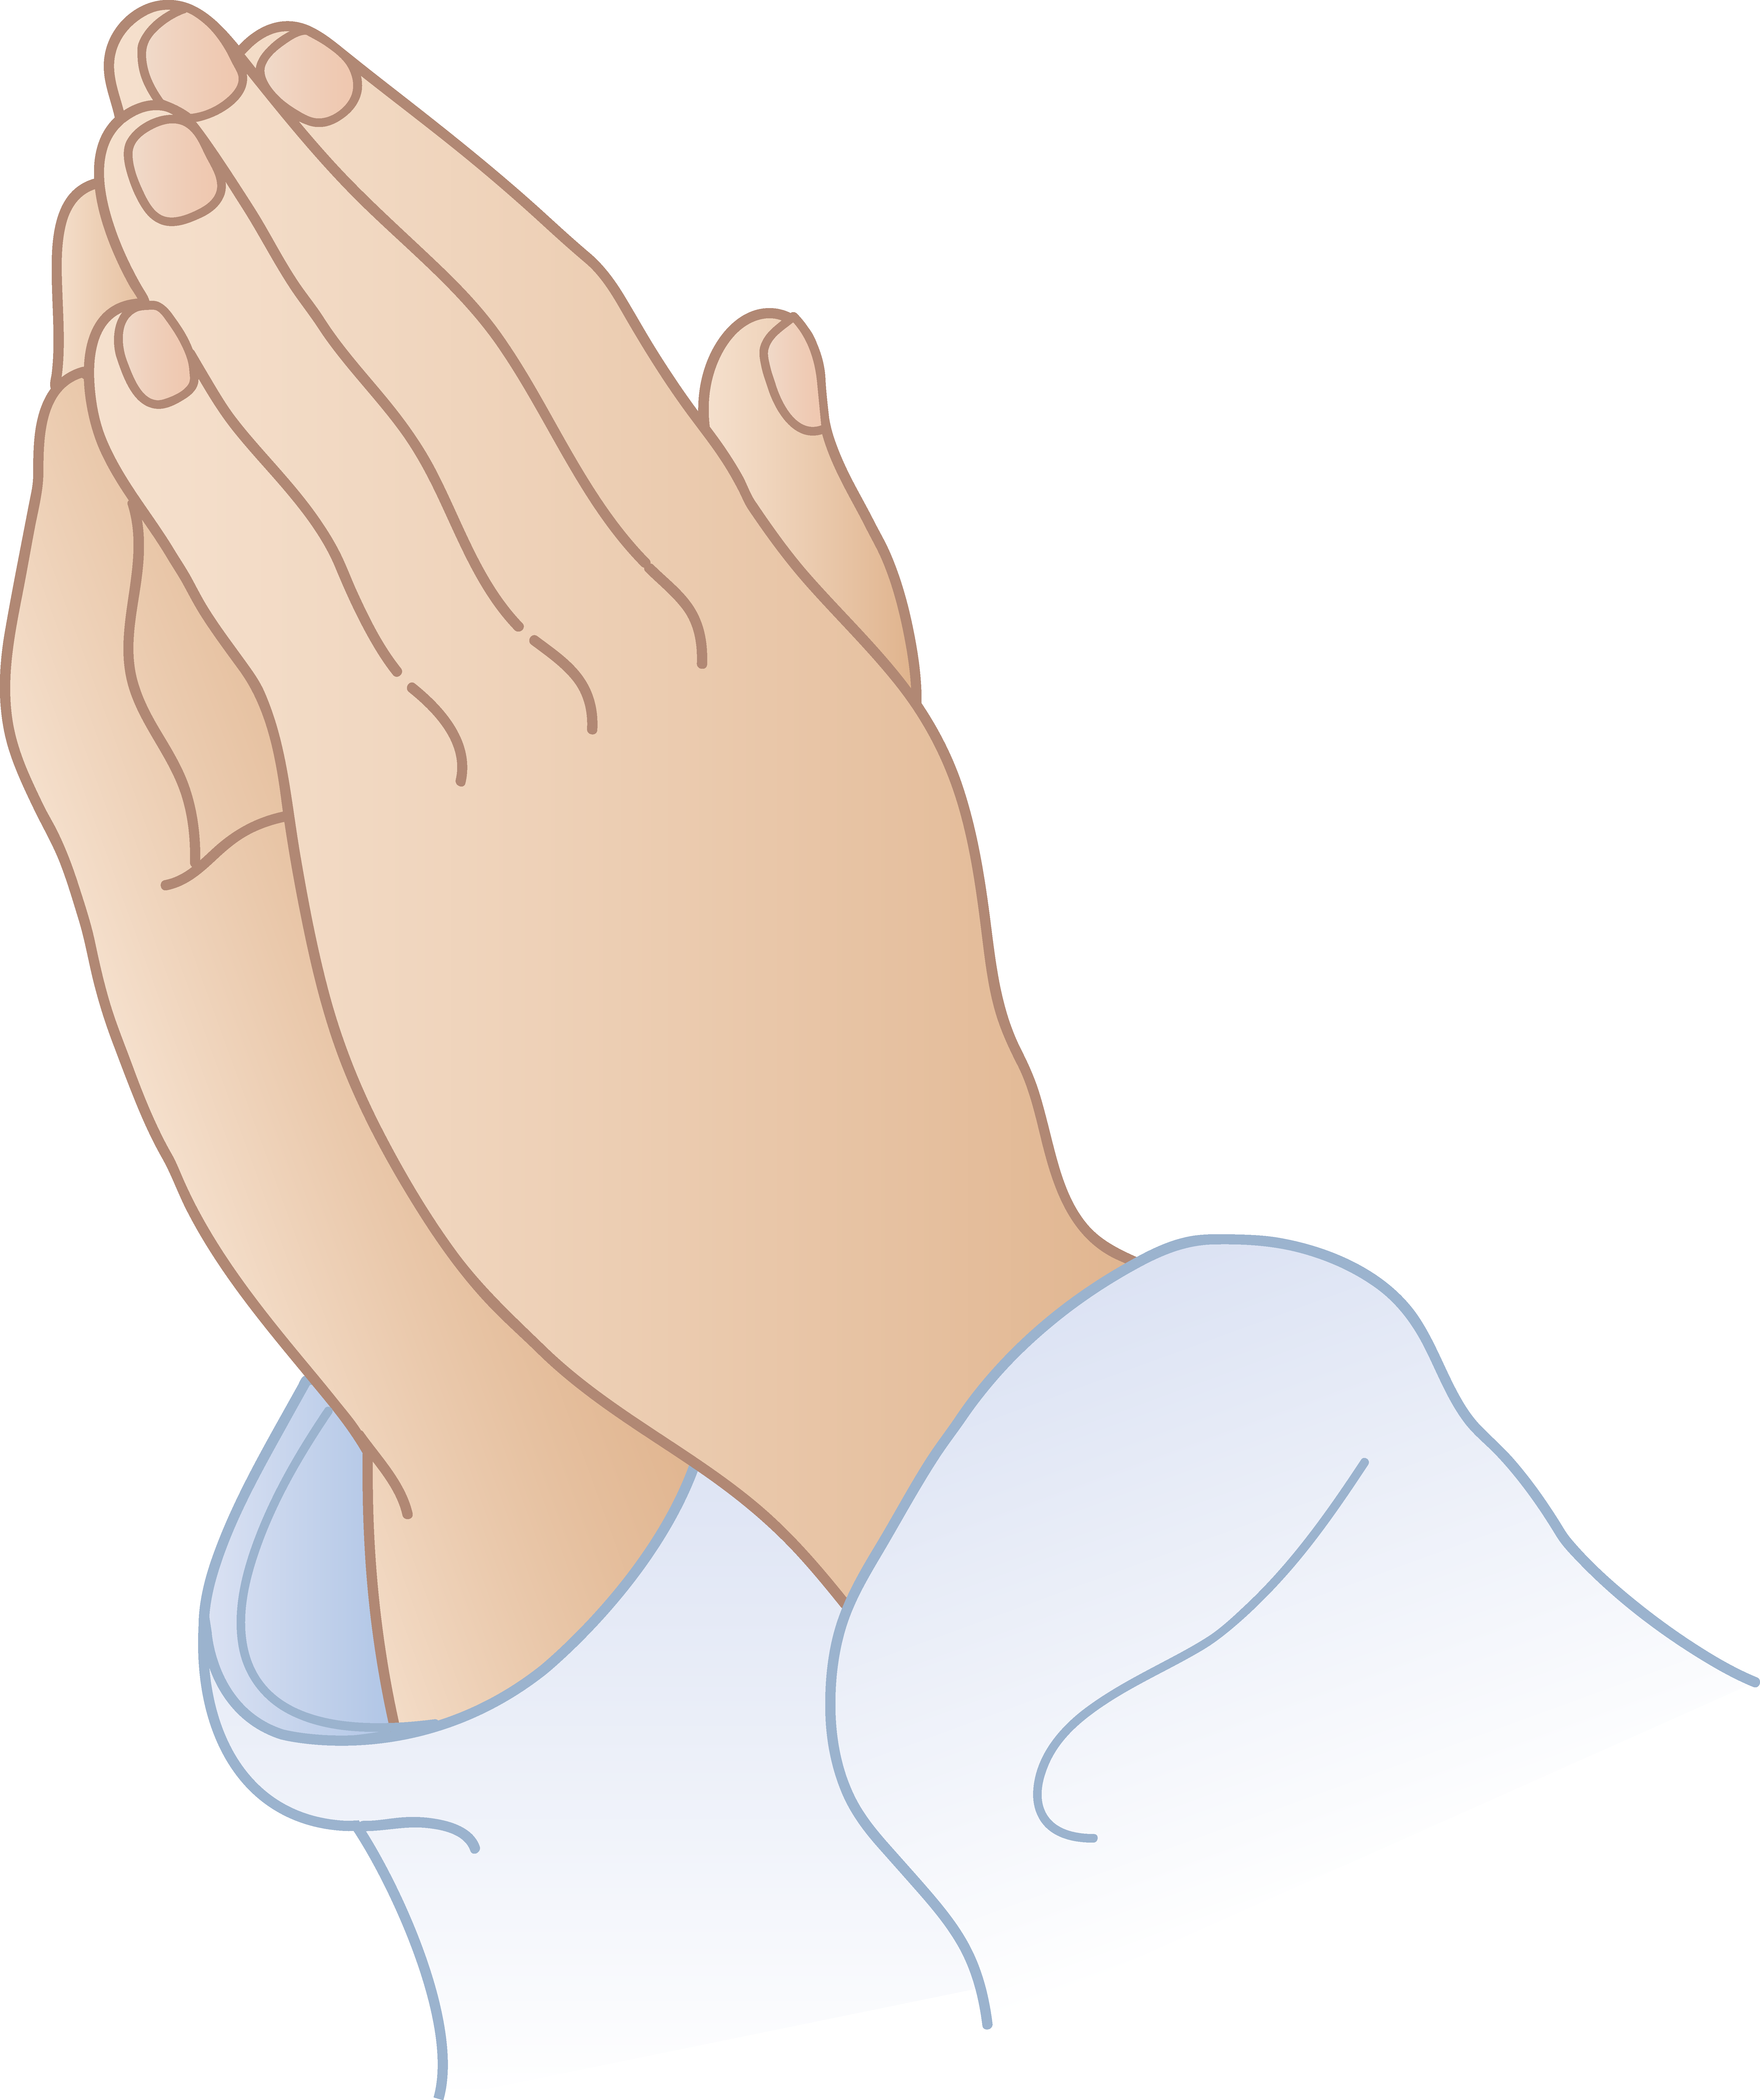 Hands clipart prayer. Praying free clip art